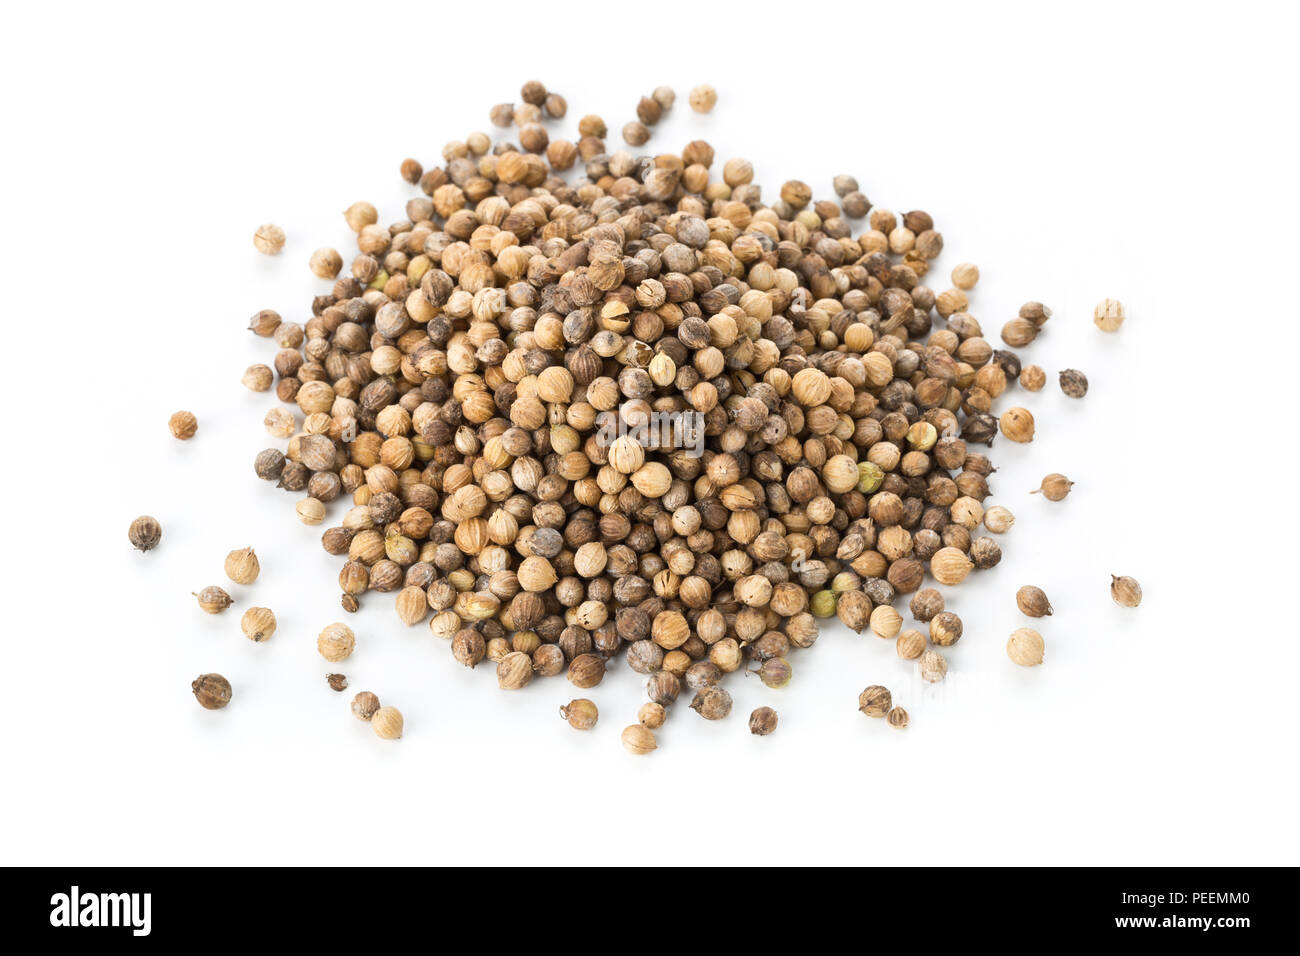 Haufen rohe, unbearbeitete Bio Koriander oder koriander Samen auf weißem Hintergrund Stockfoto